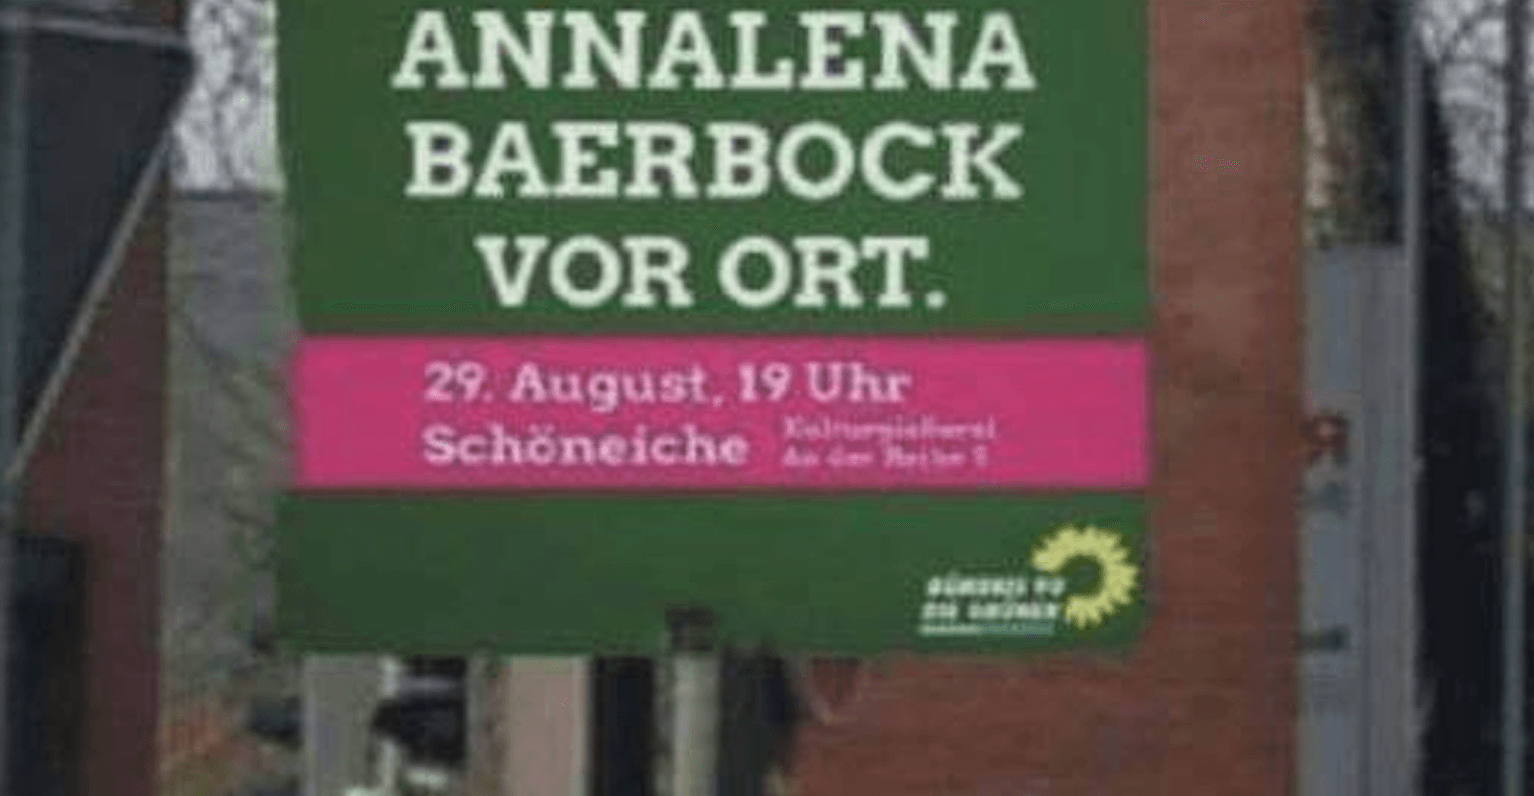 Das Plakat der Grünen wirbt für eine Veranstaltung im Ort Schöneiche